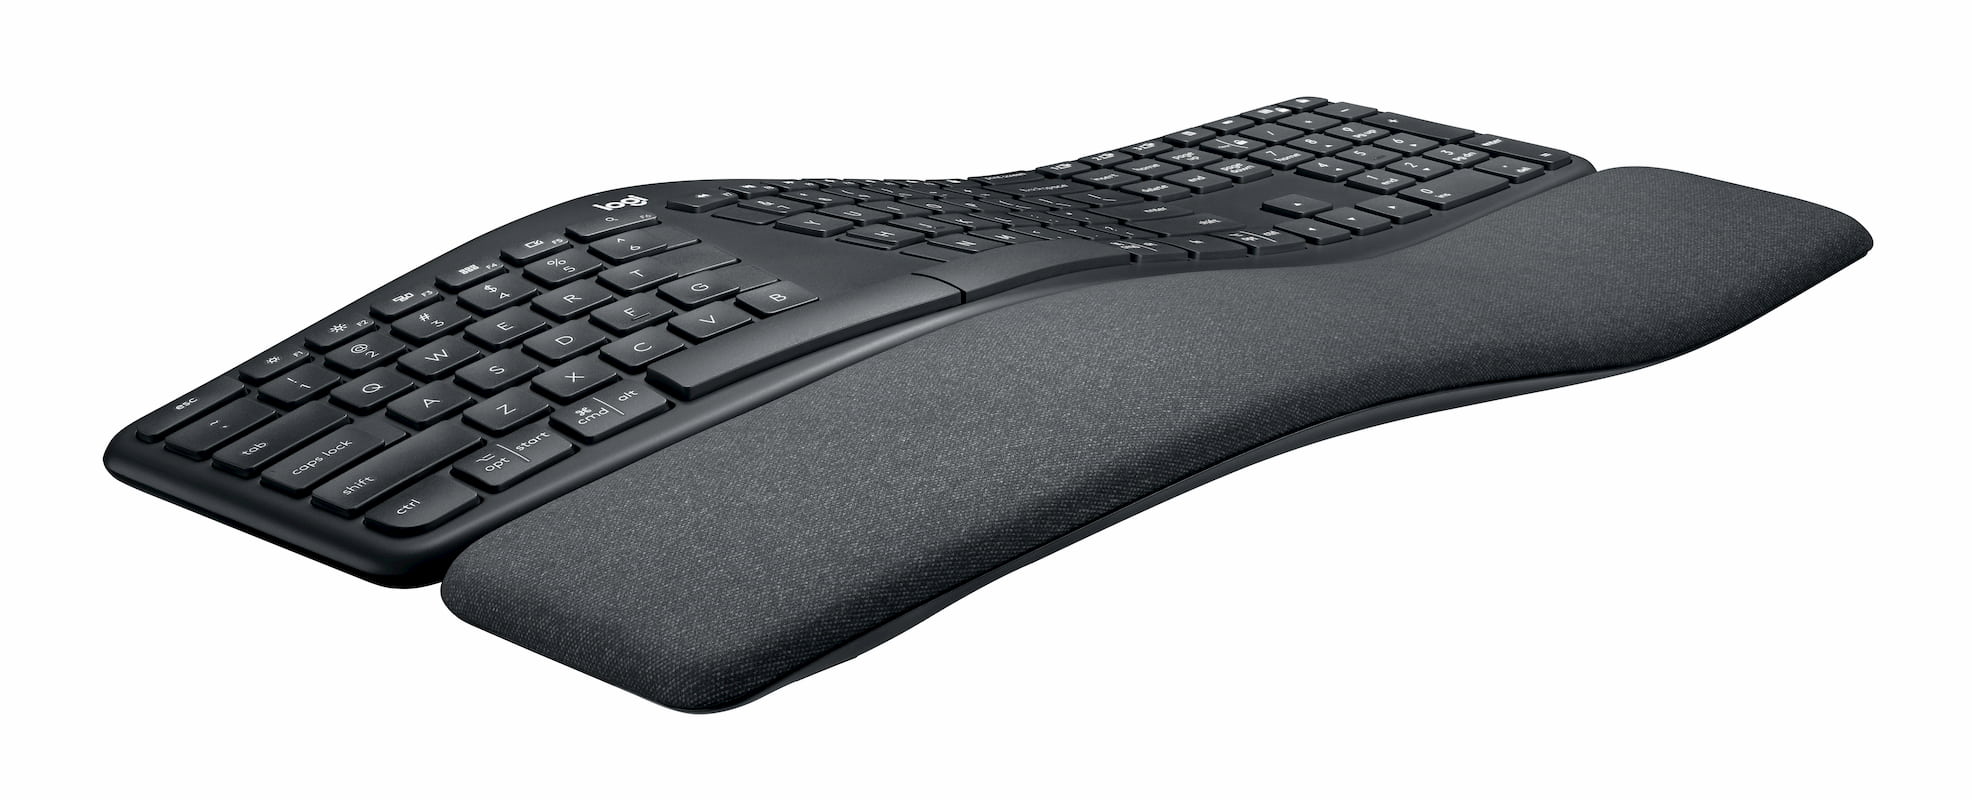 Logitech Ergo K860 klavye ergonomi için tasarlandı